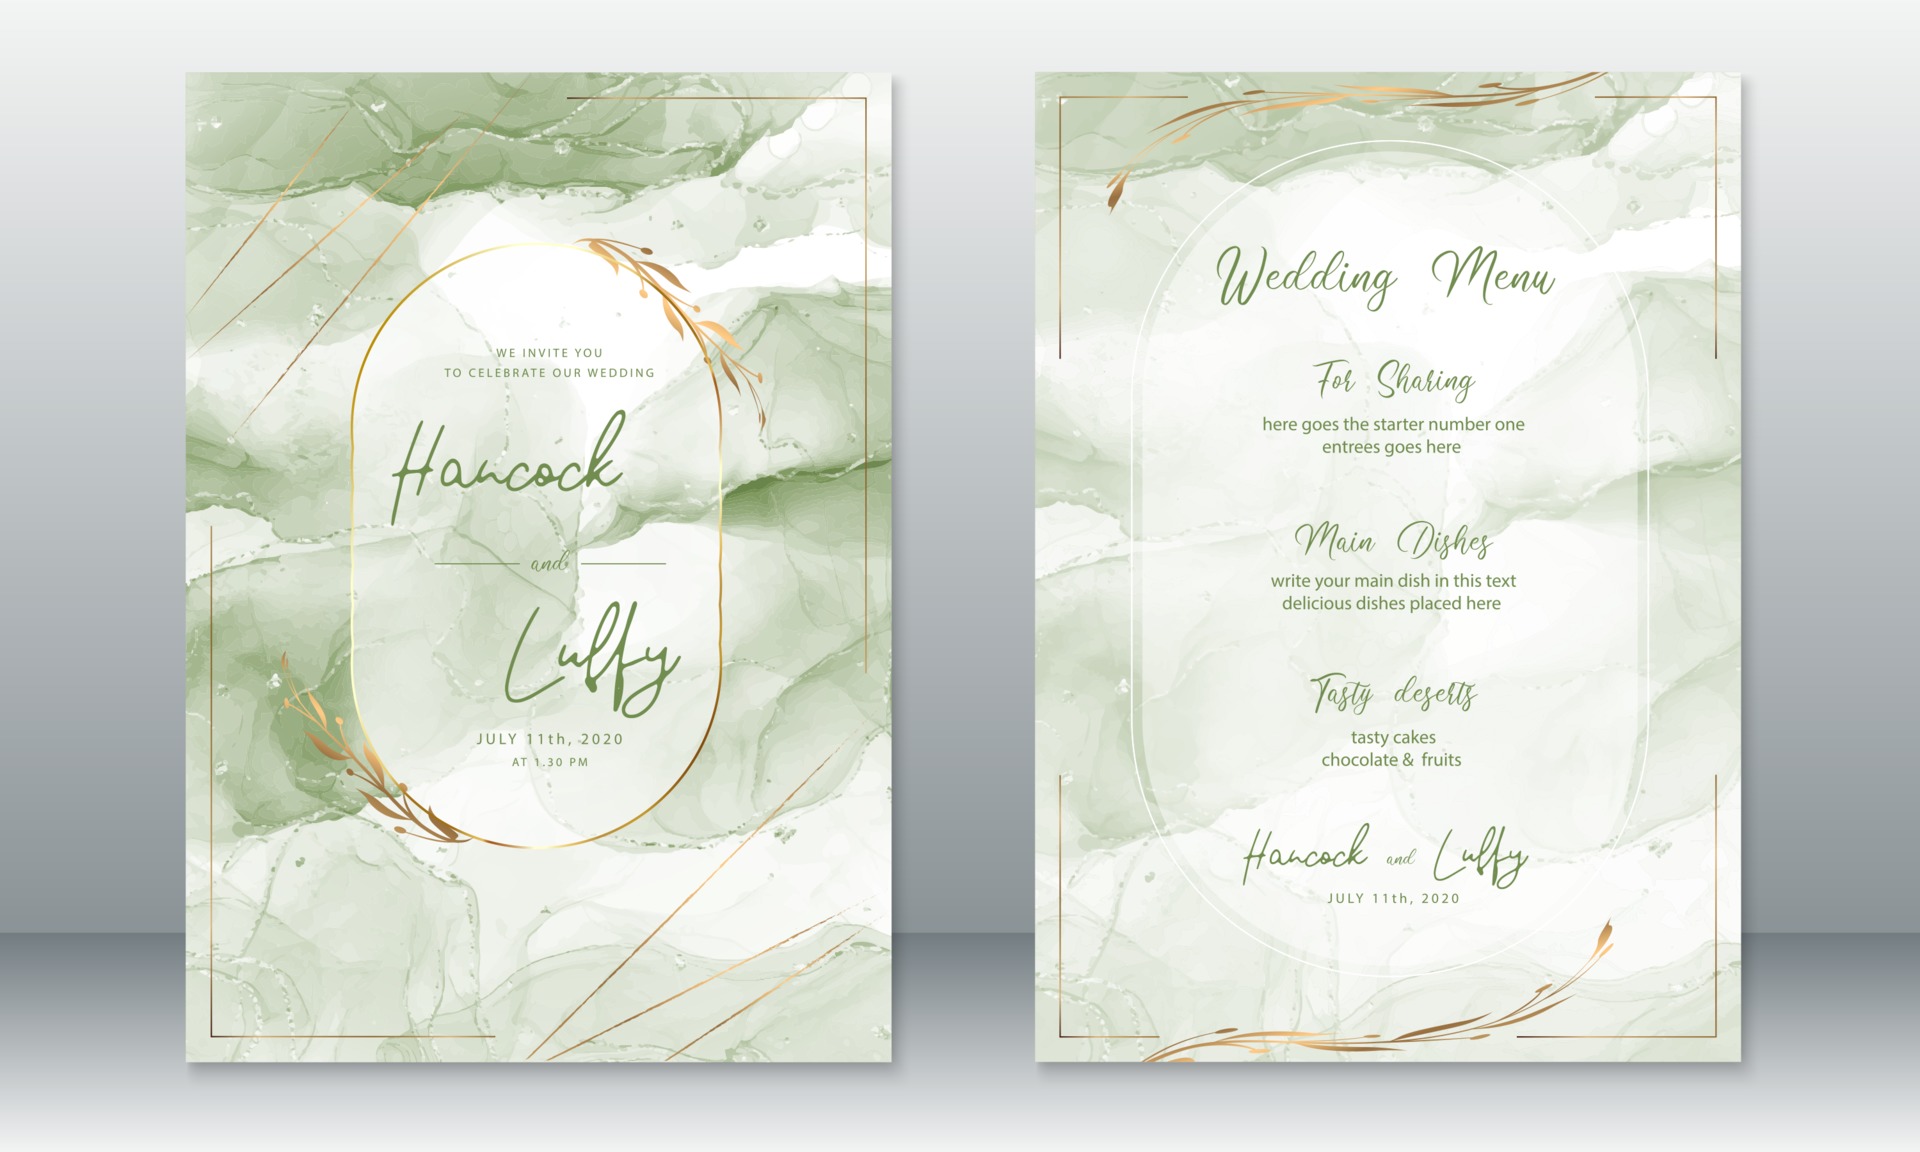 Thiết kế thẻ cưới màu xanh lá cây là một lựa chọn lý tưởng cho đám cưới thiên nhiên. Màu sắc tươi mới và thanh lịch sẽ làm cho thiệp của bạn trở nên đẹp mắt hơn bao giờ hết. Hãy xem ảnh để tìm hiểu thêm về những mẫu thiết kế thẻ cưới màu xanh lá cây độc đáo và ấn tượng.